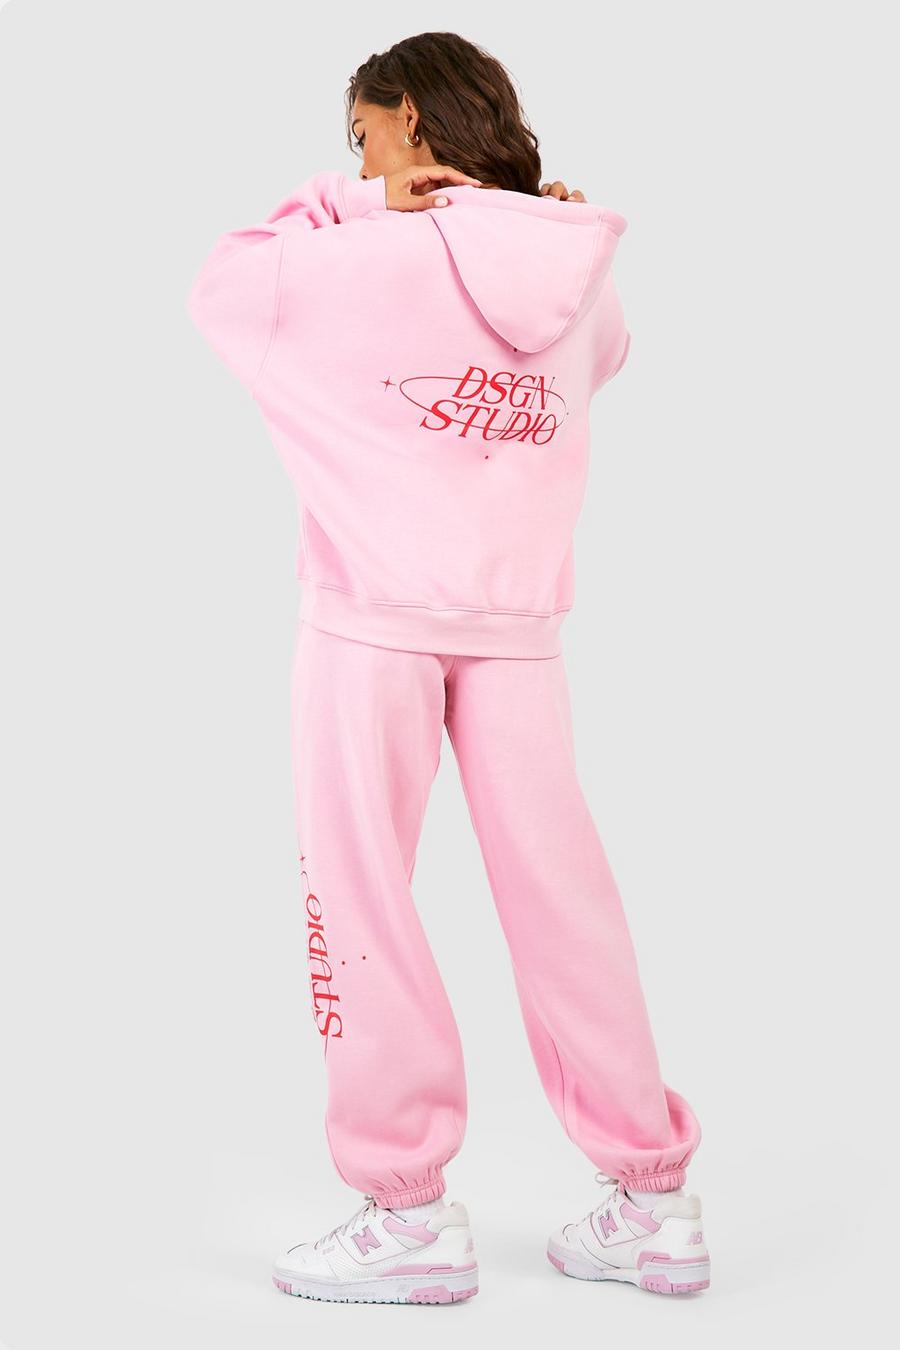 Tuta sportiva con slogan Dsgn Studio e cappuccio, Light pink